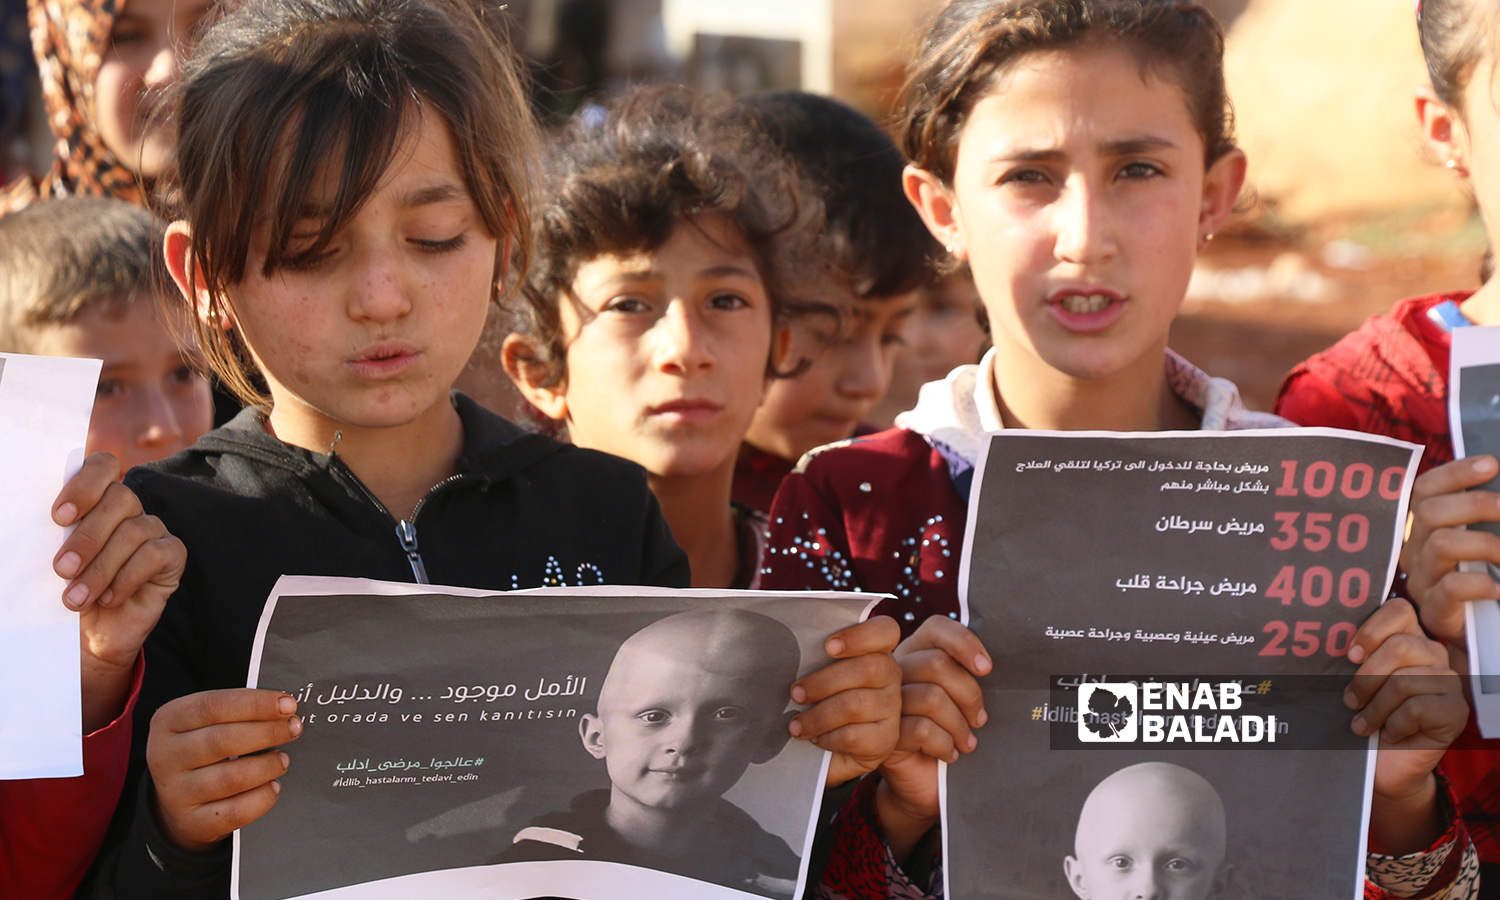 مجموعة أطفال في وقفة احتجاجية تحت شعار"عالجوا مرضى إدلب" للمطالبة بعلاج المرضى في الشمال السوري - 2 تشرين الثاني 2021 (عنب بلدي / إياد عبد الجواد)
